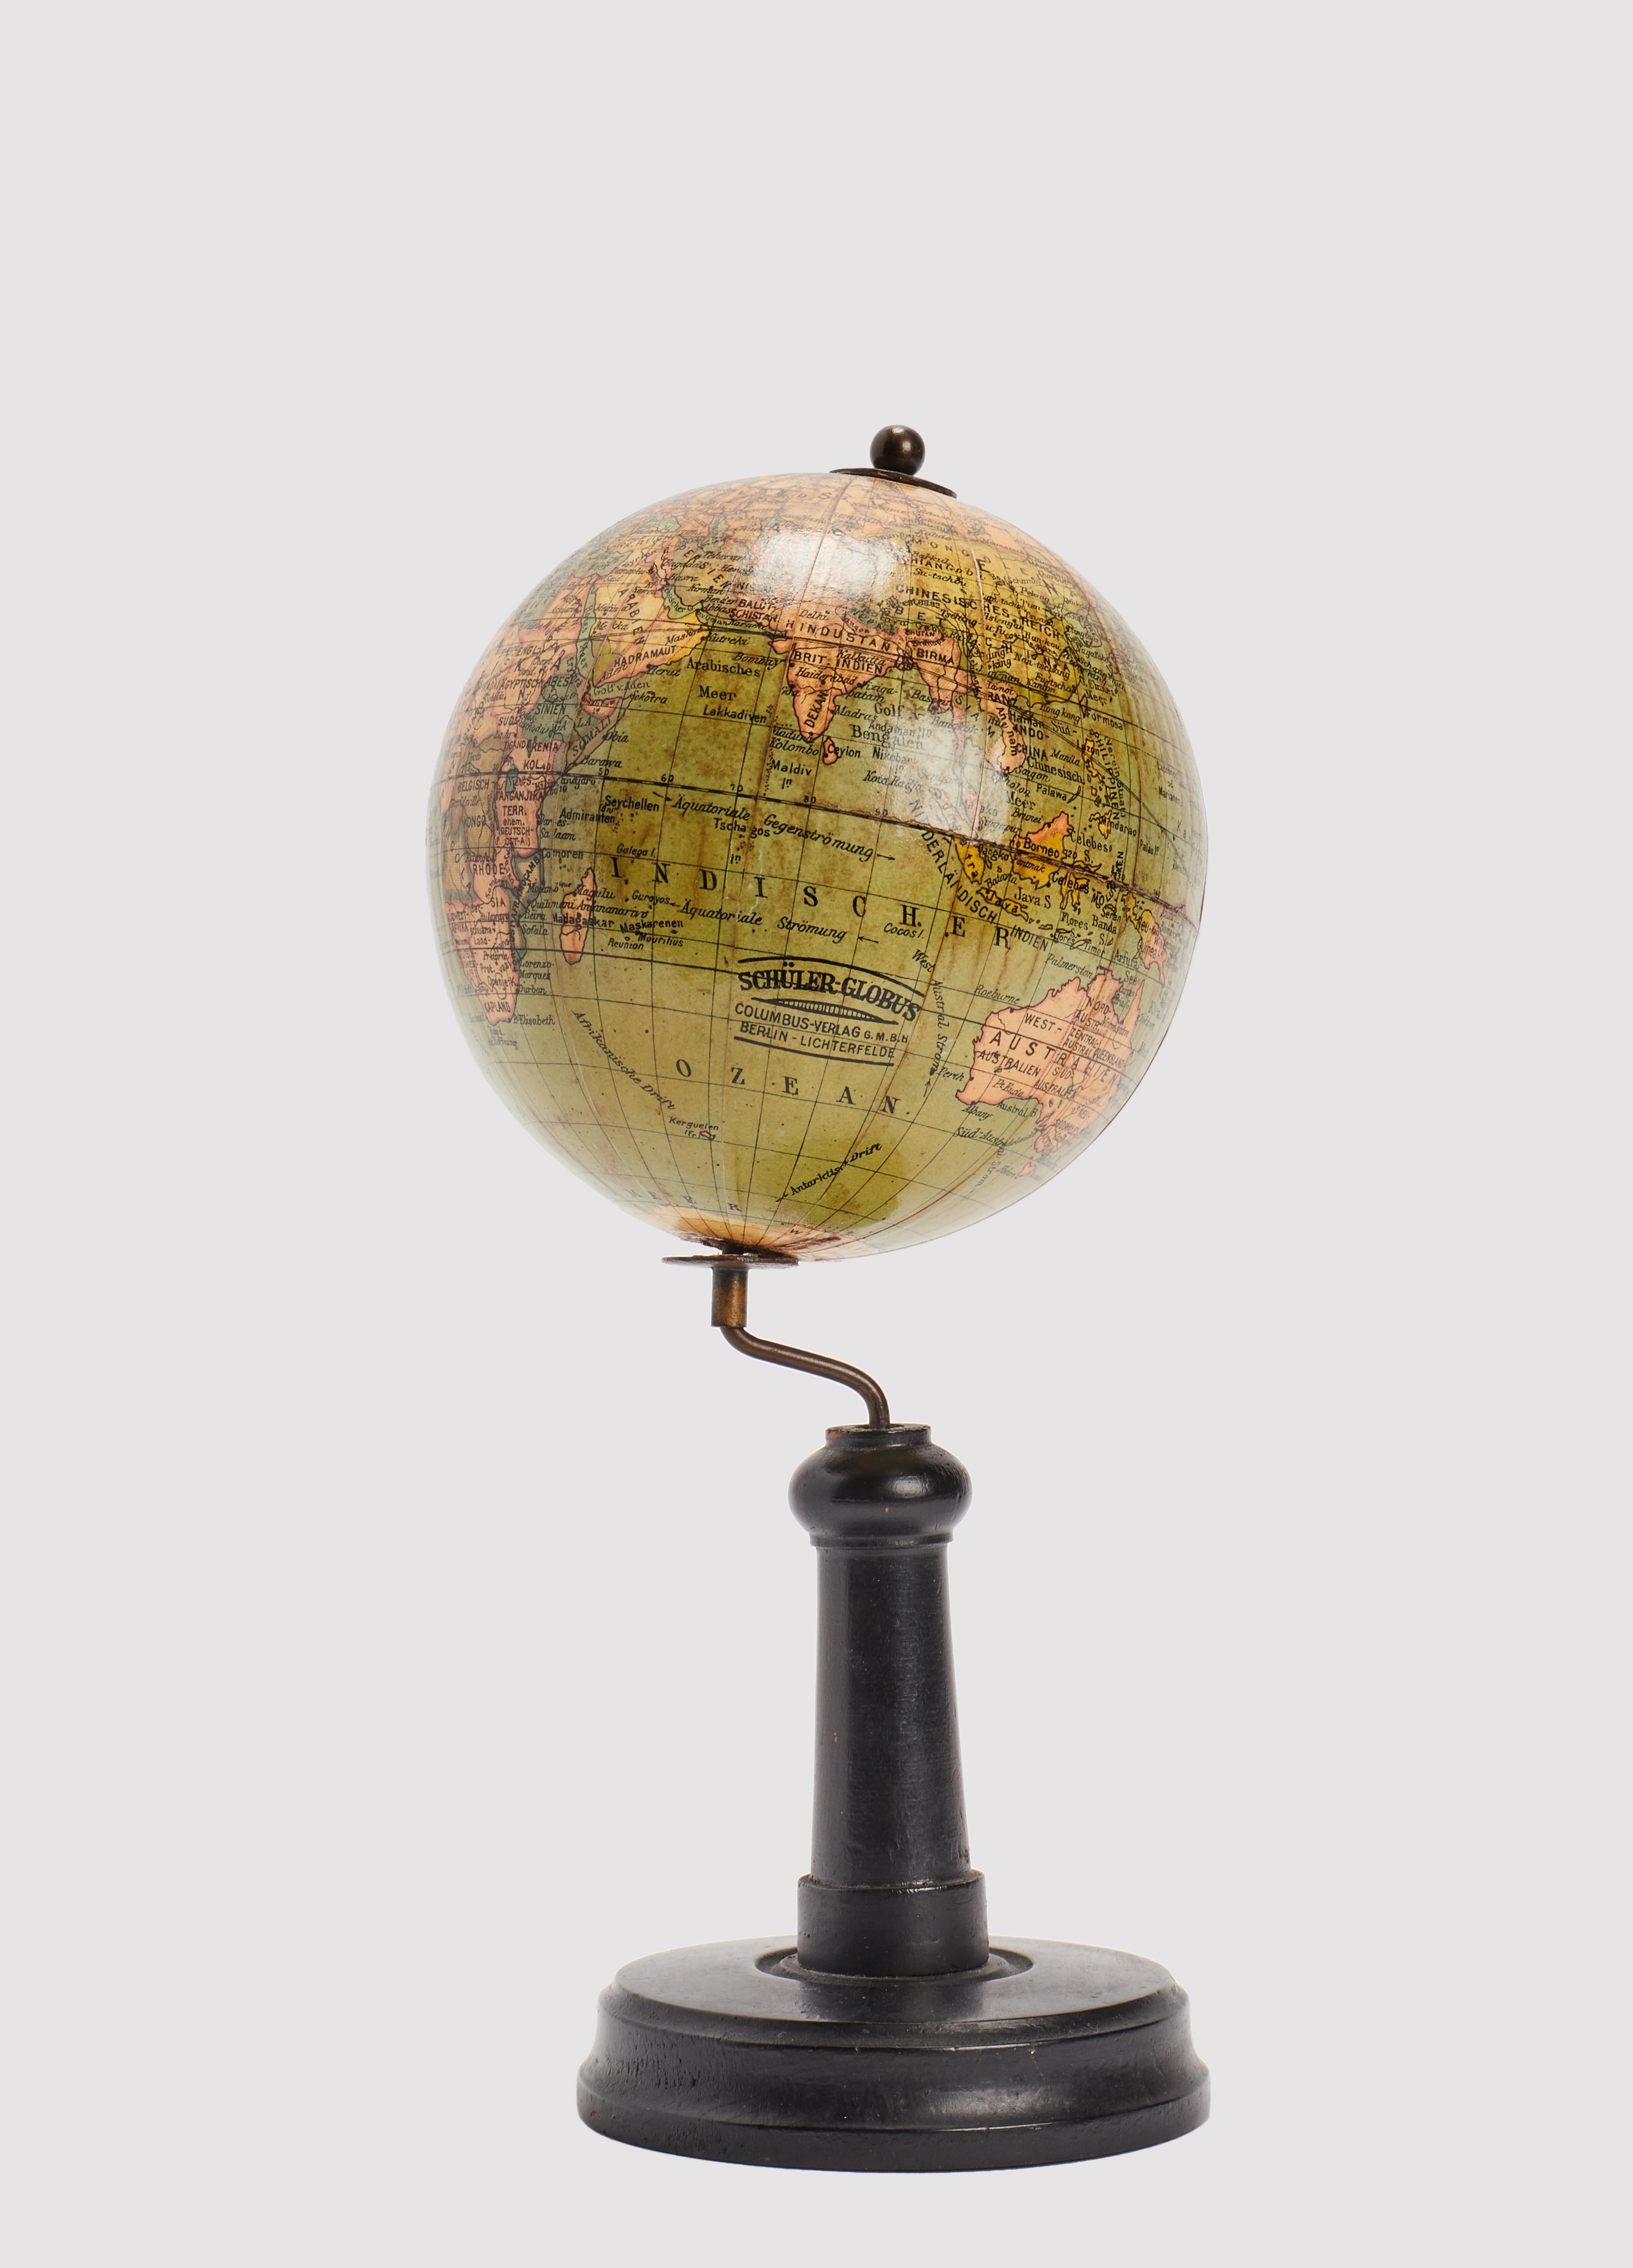 Auf einem gedrechselten Holzsockel mit rundem Fuß, gewelltem Profil und hohem Bein, mit originaler Patina, befindet sich ein kleiner Globus, herausgegeben von Columbus, Berlin. Die Weltkugel ist aus Pappmaché gefertigt, mit einem feinen Kleister